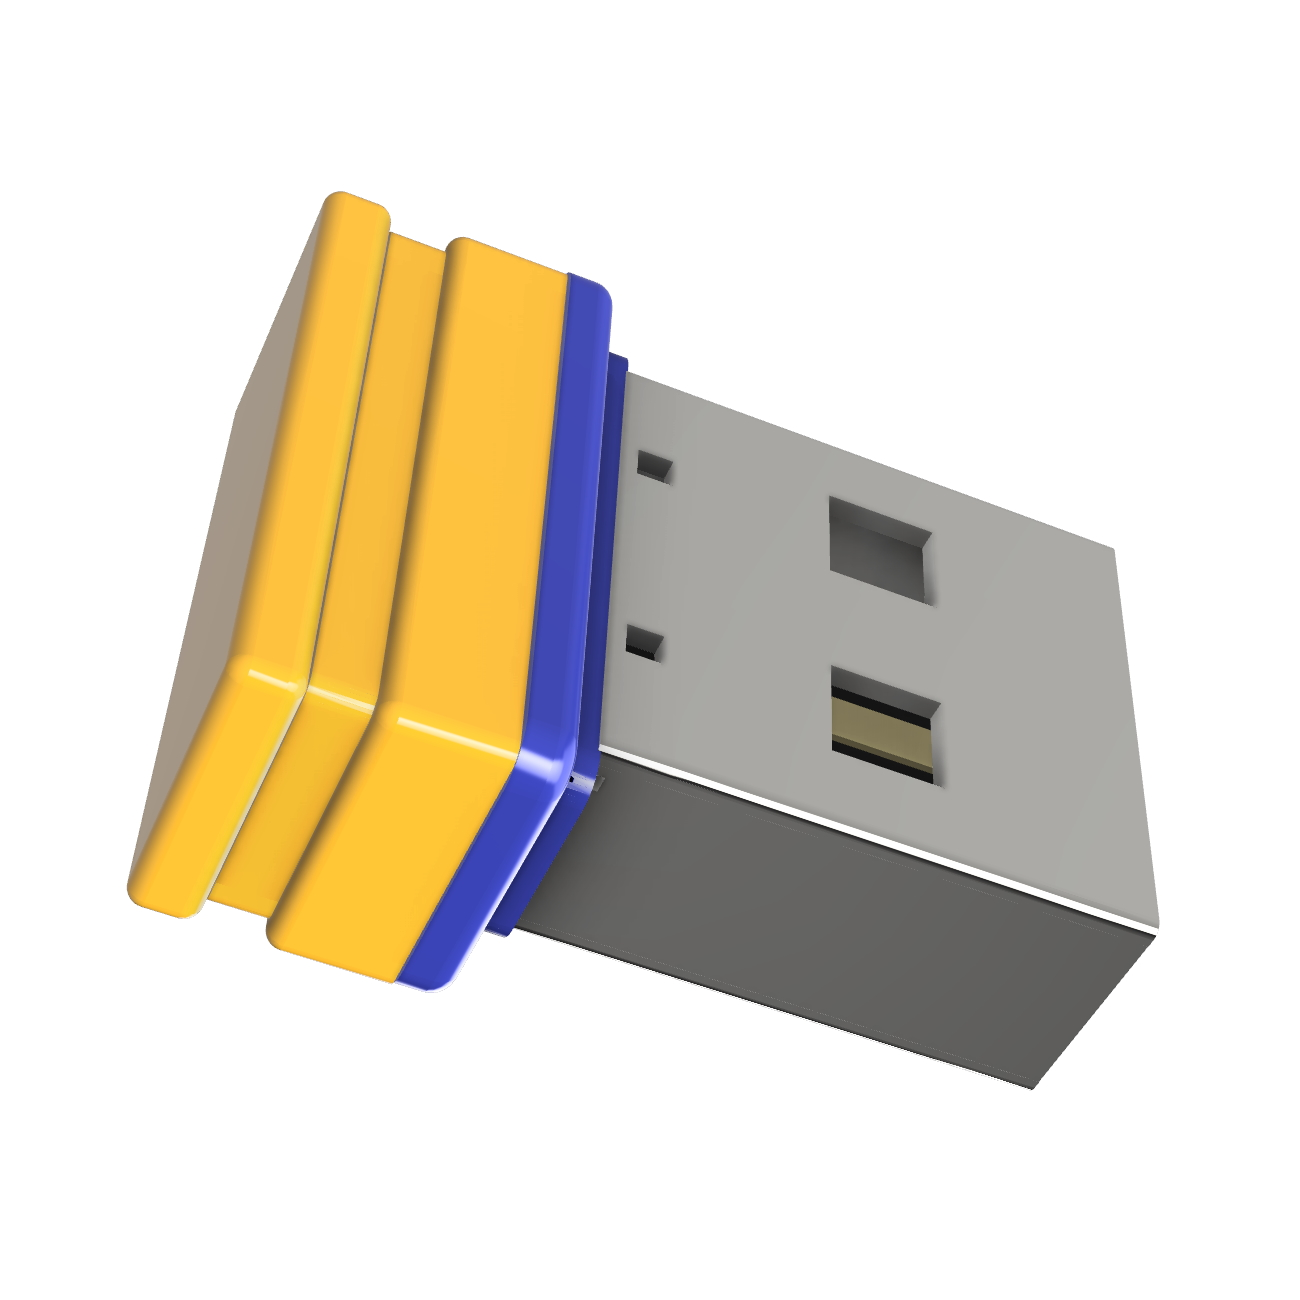 32 USB P1 USB-Stick (Gelb/Blau, Mini GB) GERMANY ®ULTRA